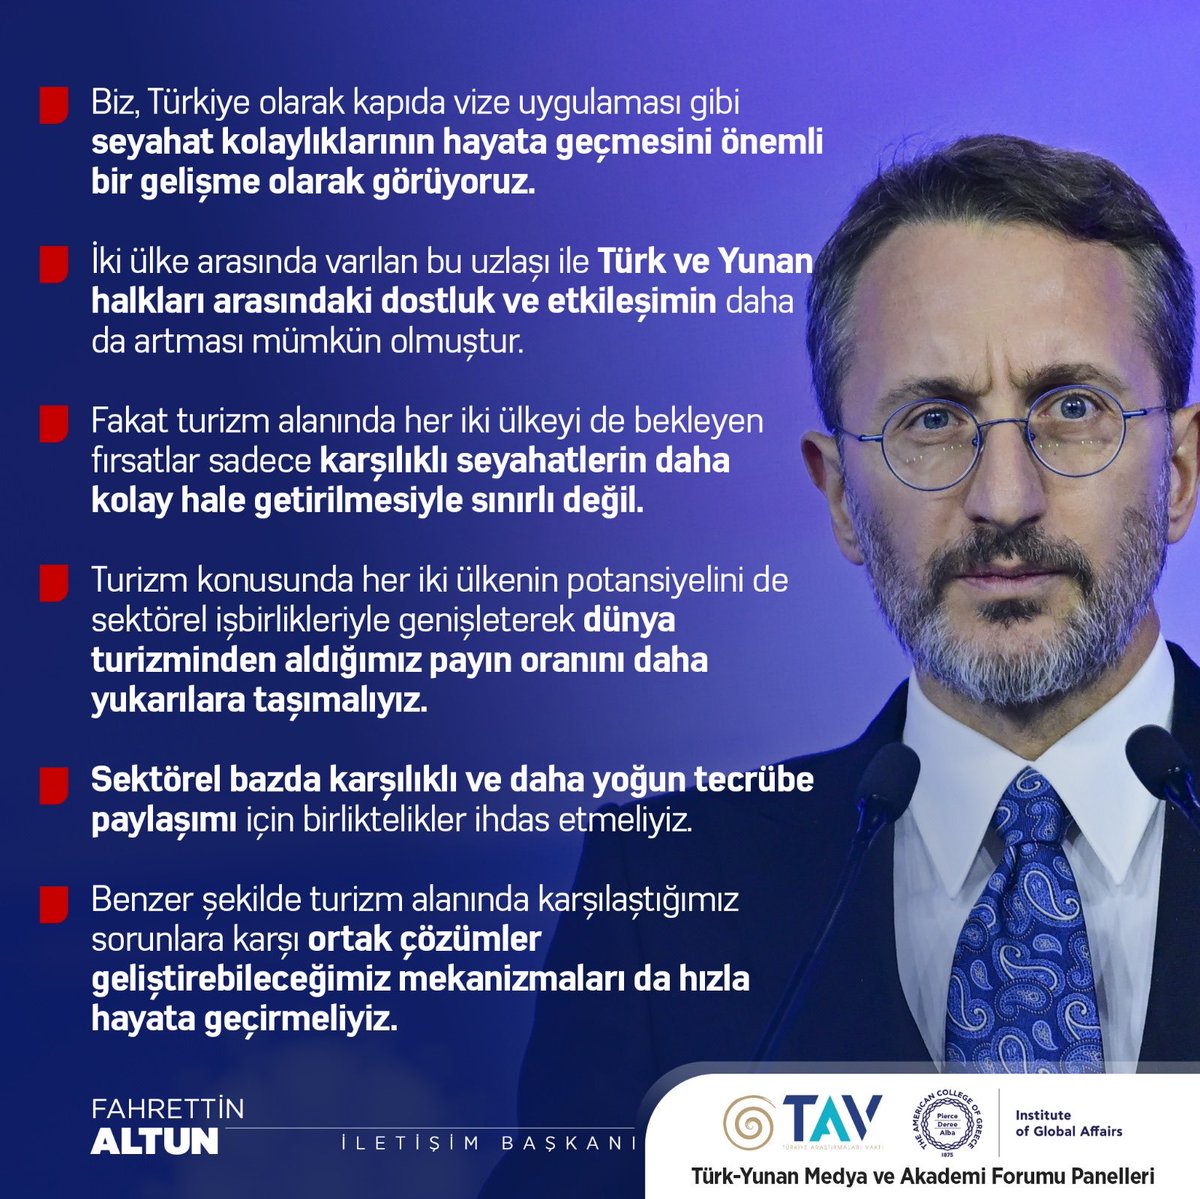 İletişim Başkanı Fahrettin Altun (@fahrettinaltun): '(Türk-Yunan Medya ve Akademi Forumu) Kapıda vize uygulaması gibi kolaylıkları önemli bir gelişme olarak görüyoruz. Bu uzlaşı ile Türk ve Yunan halkları arasındaki dostluk ve etkileşimin daha da artması mümkün olmuştur.'